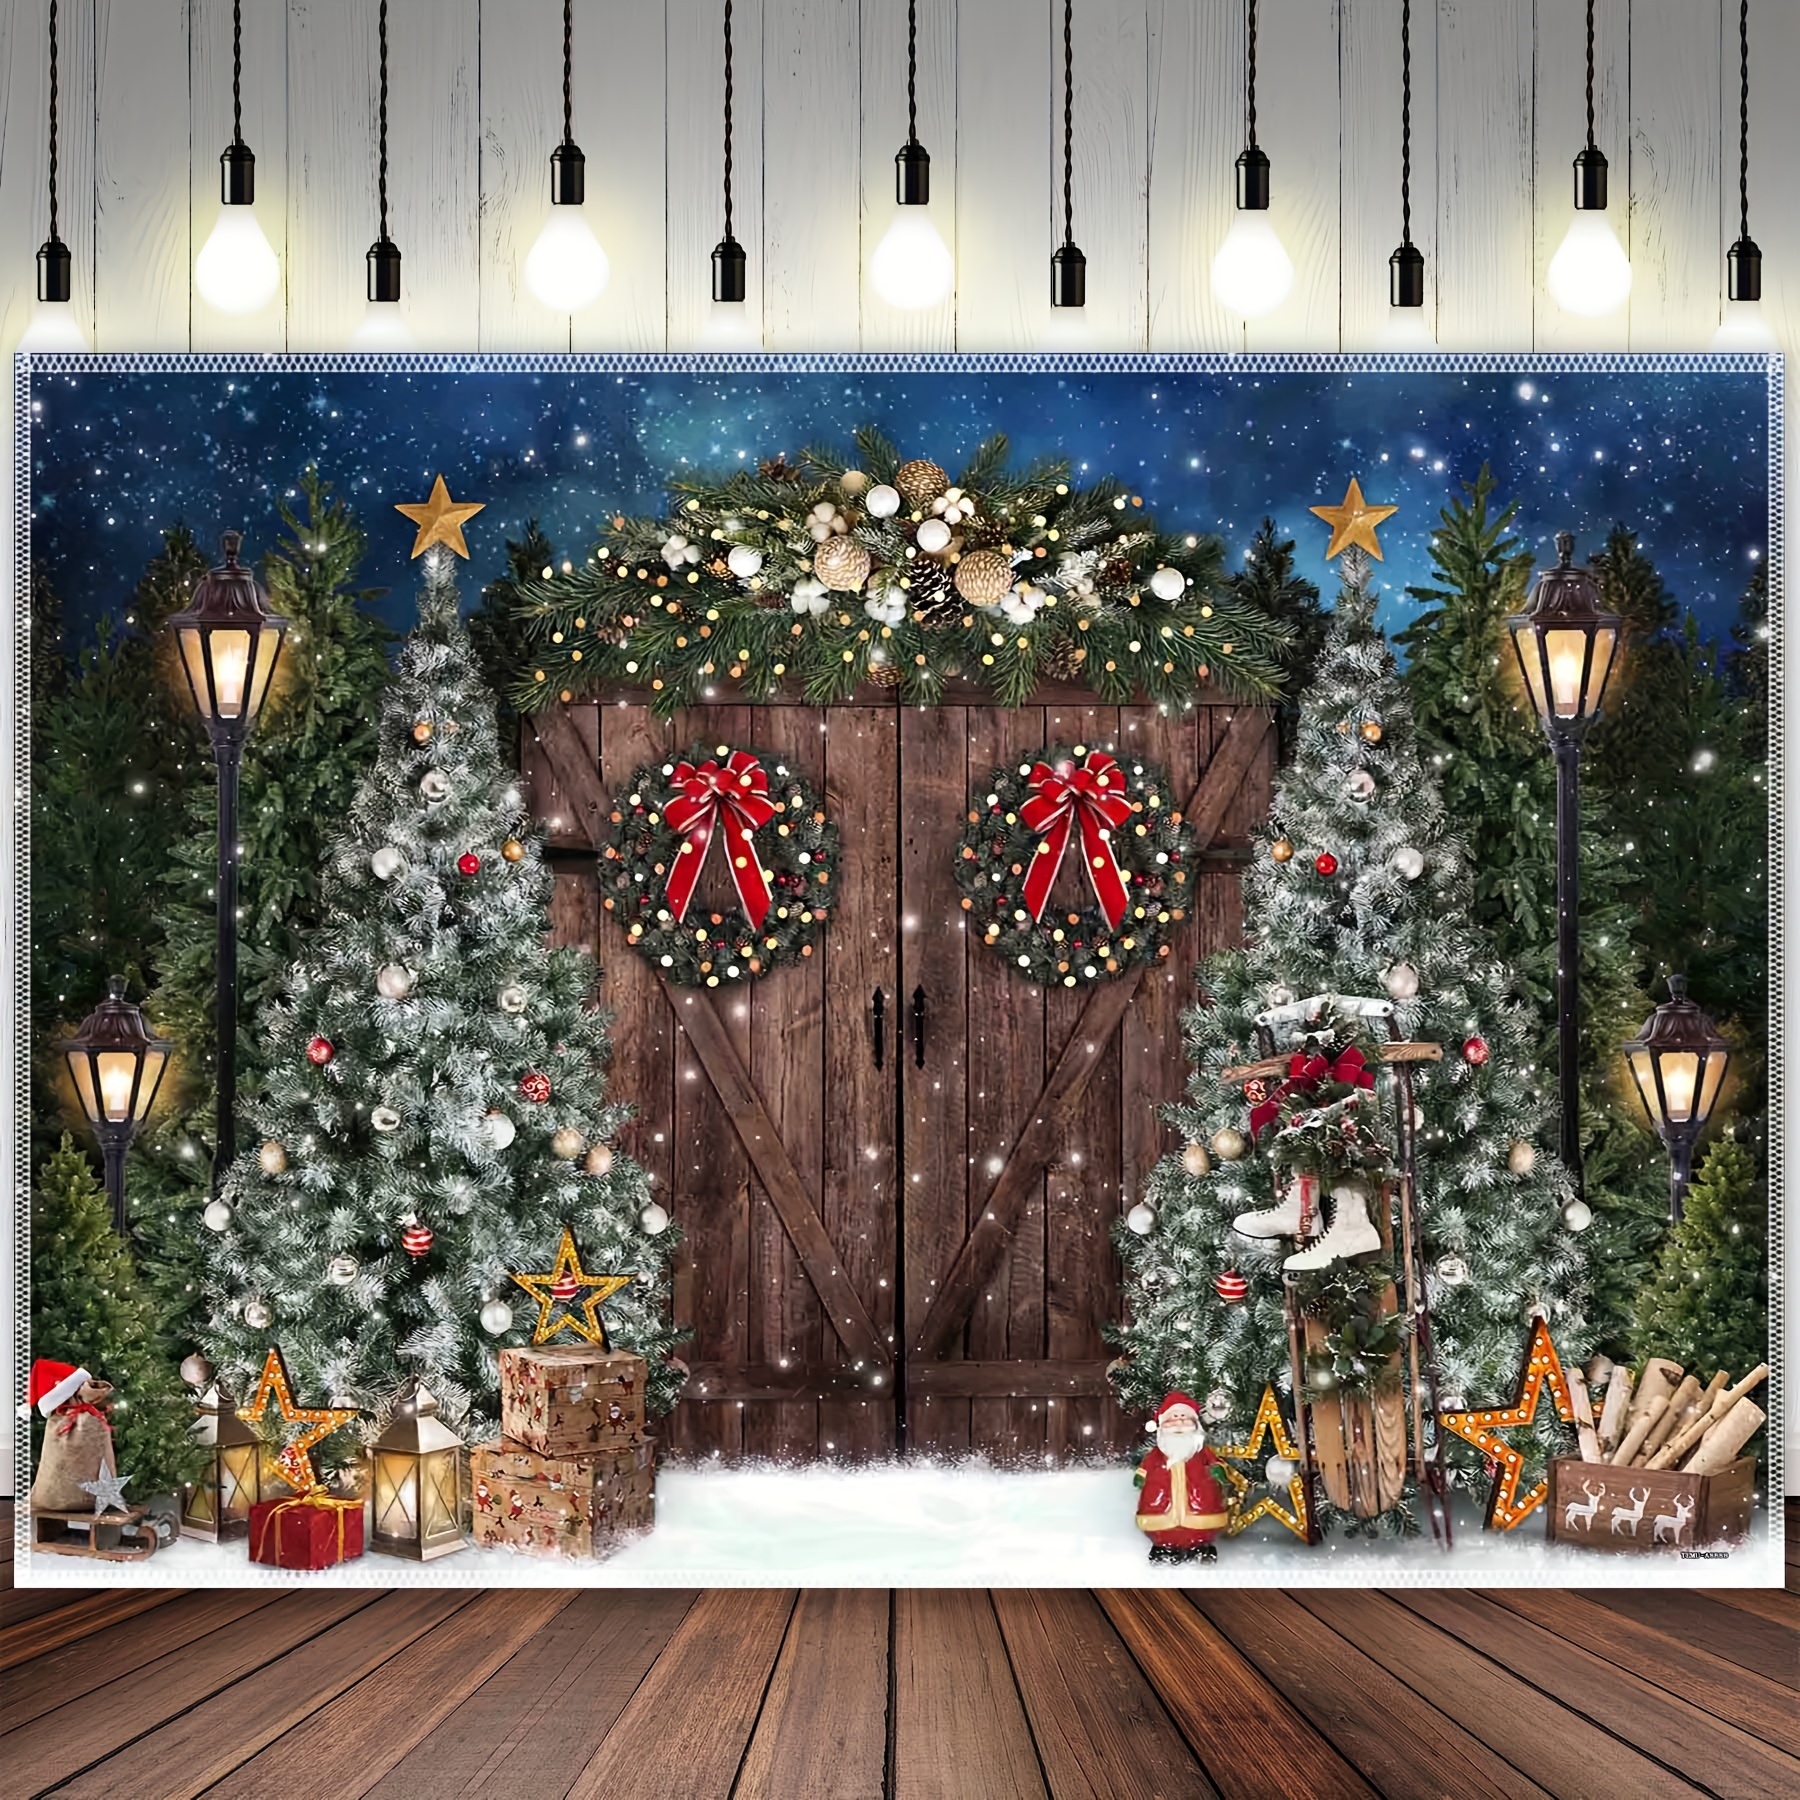  Fondo de Navidad de invierno árbol de madera de piso de bebé  retrato fotografía fondo decoración foto estudio Photocall prop A4  7x5ft/2.1x1.5m : Electrónica